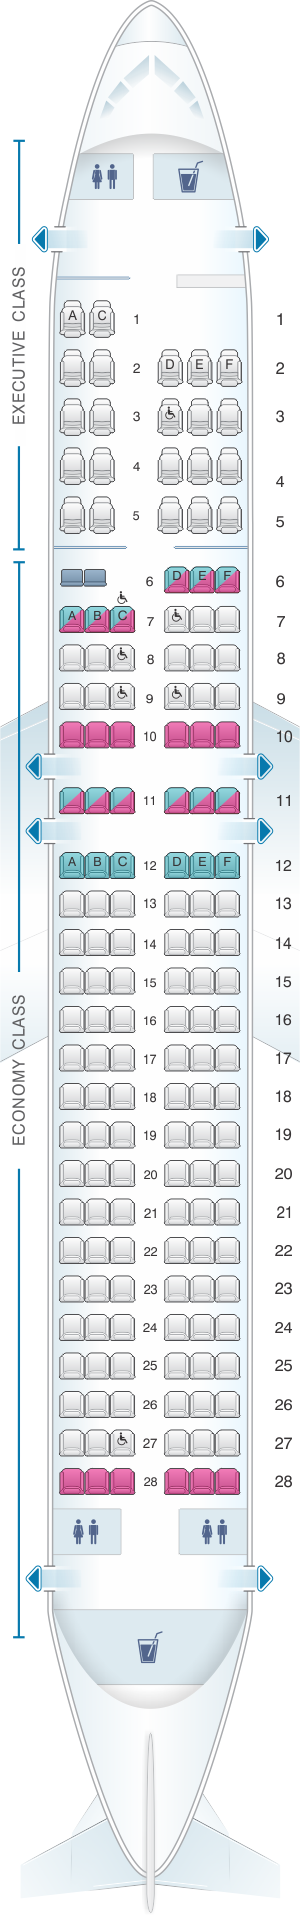 Seat map for SATA Air Açores Airbus A320-200 Config.2